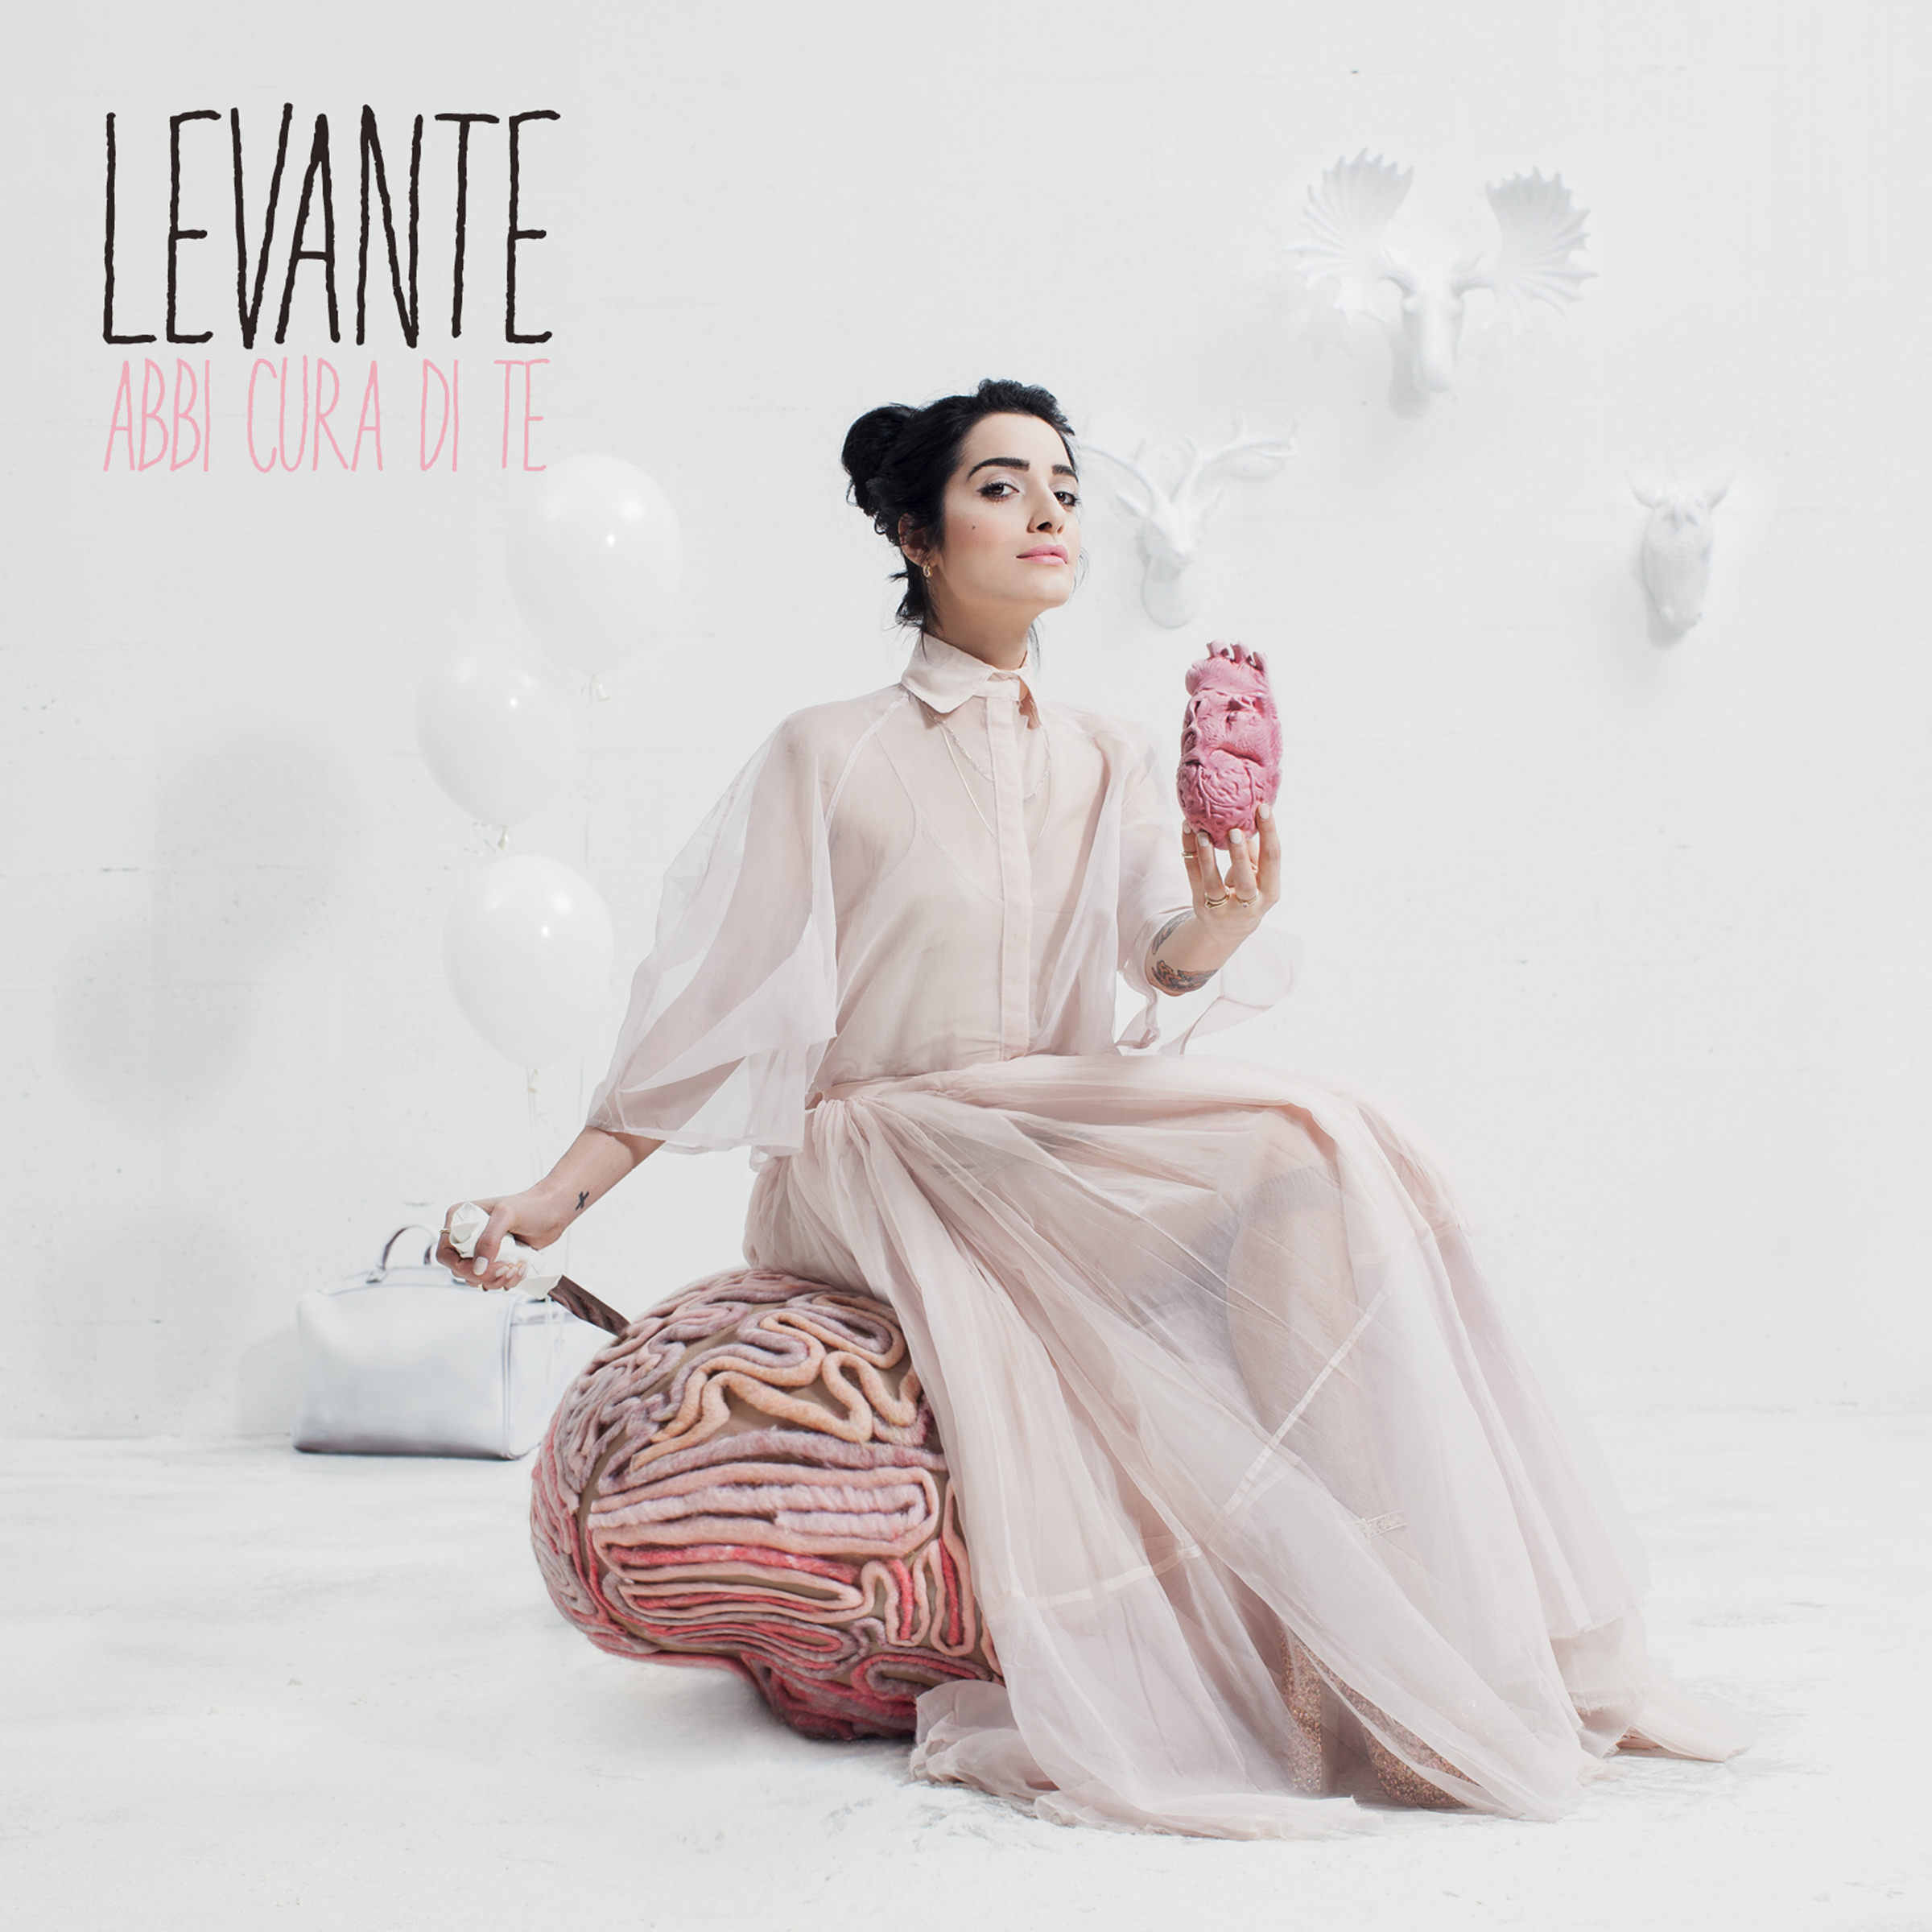 Levante album cover web 2400